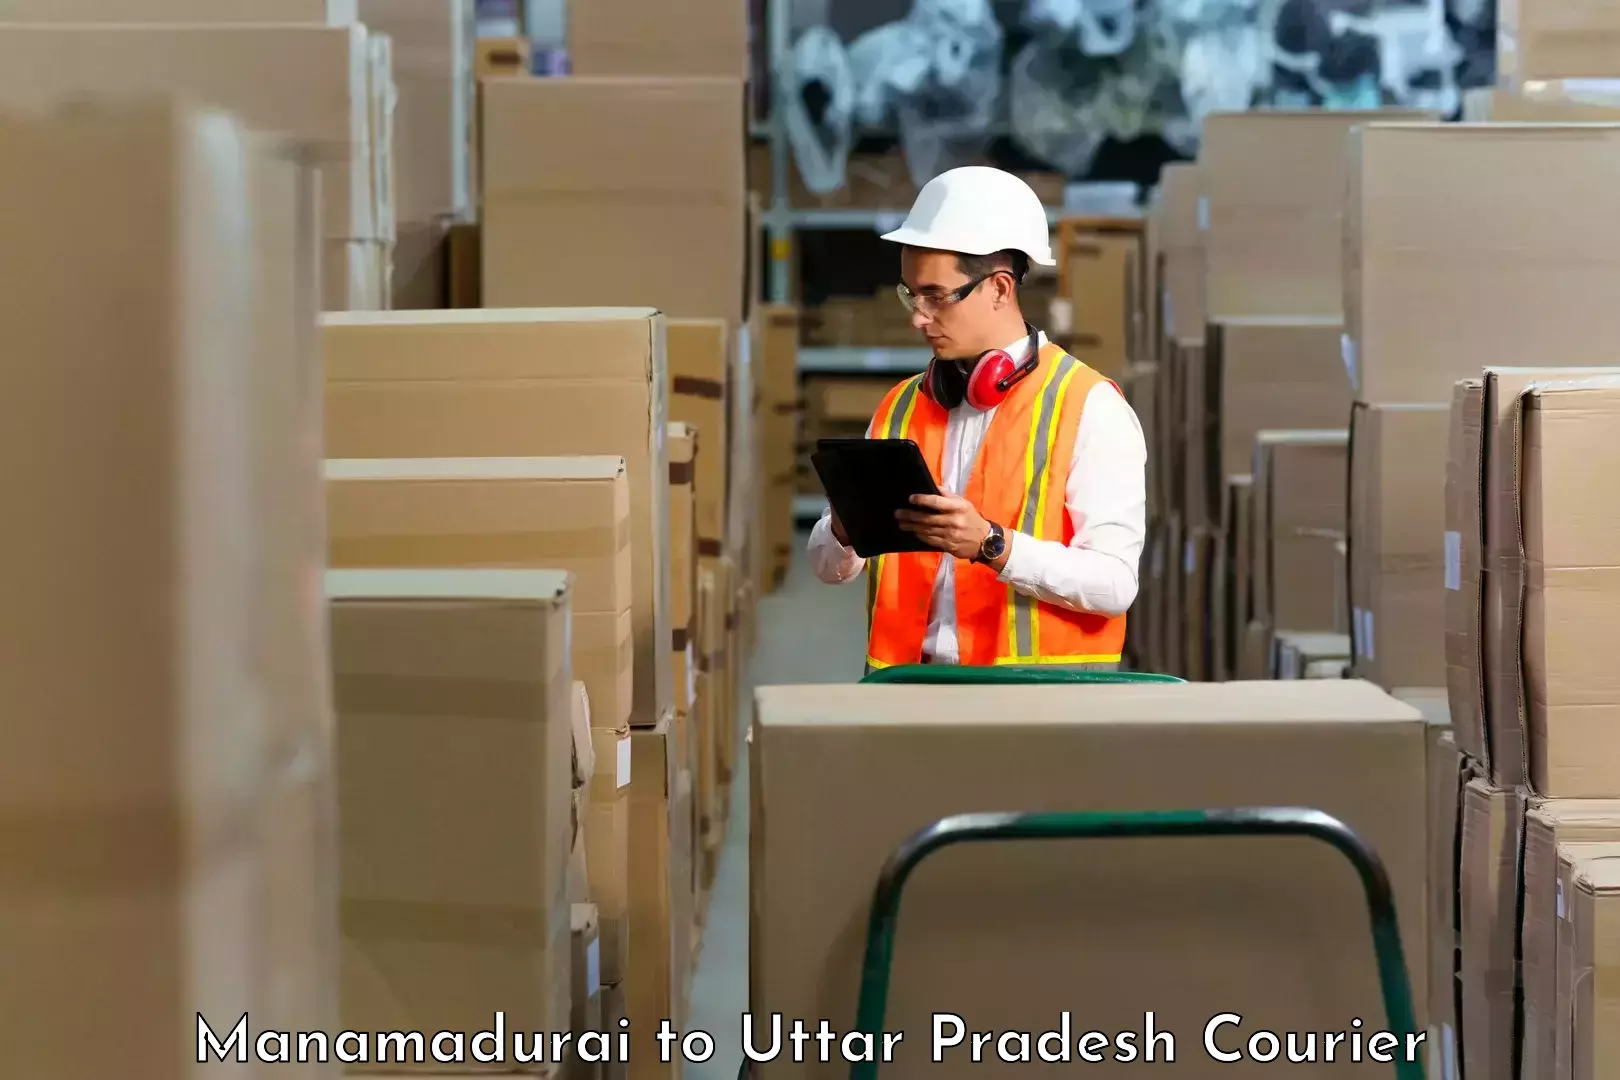 Multi-city courier Manamadurai to Mahrauni